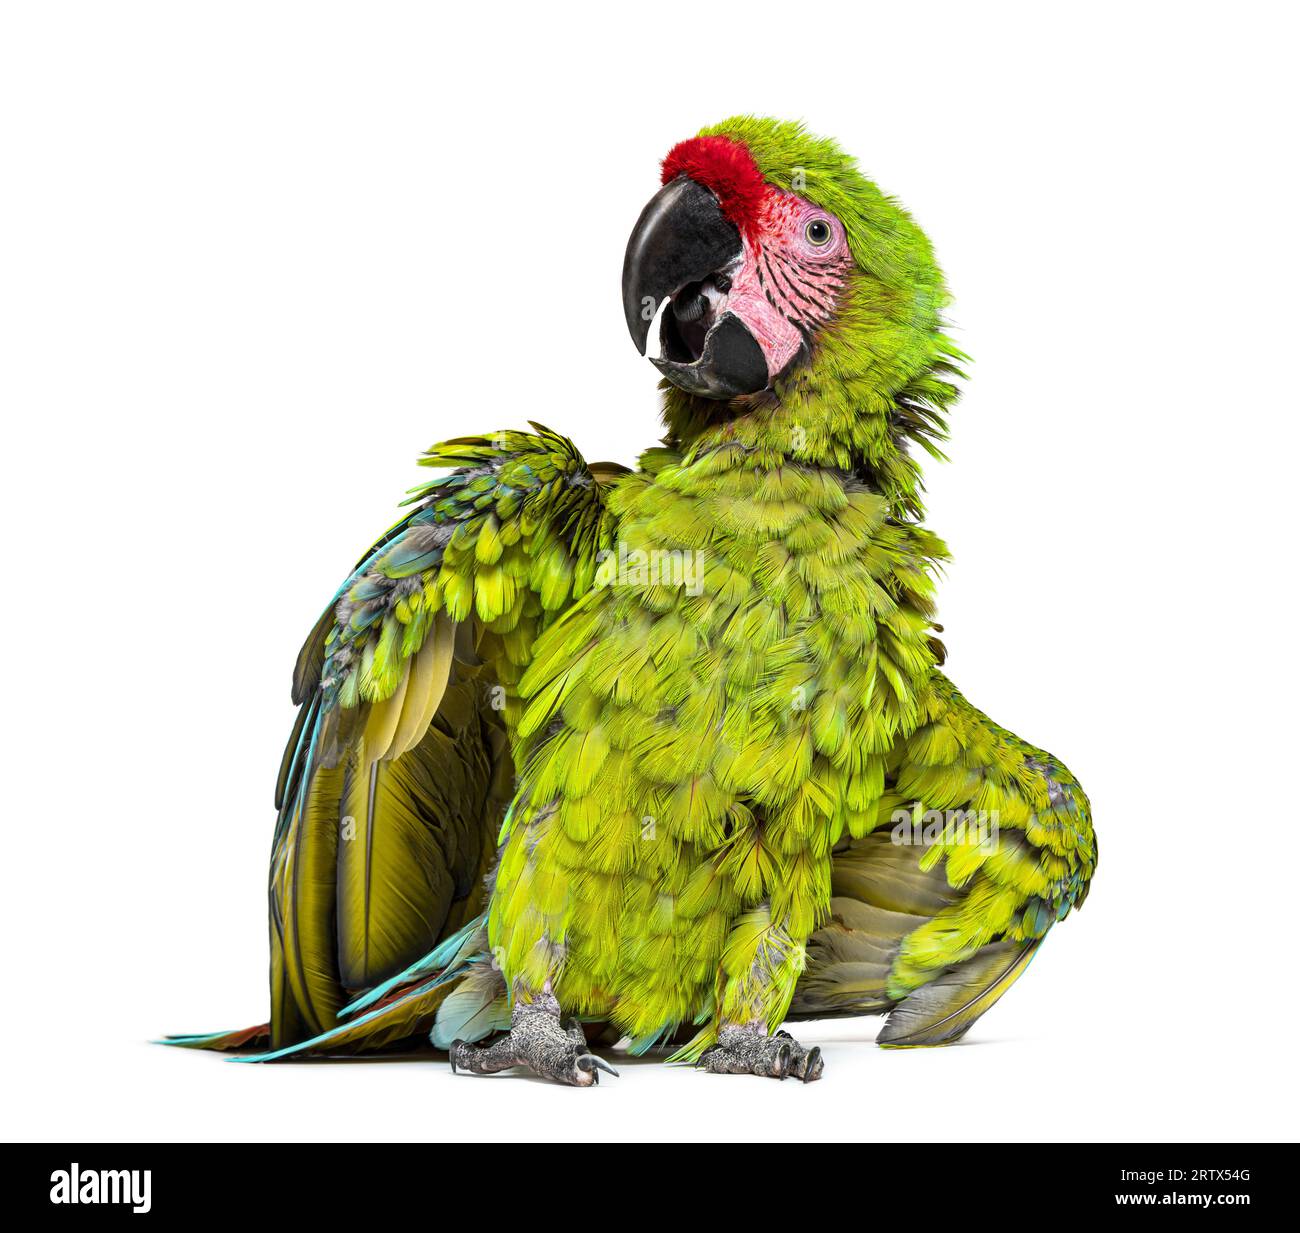 Enojado Gran guacamaya verde extendiendo sus alas y plumas para impresionar, Ara ambiguus, aislado en blanco Foto de stock